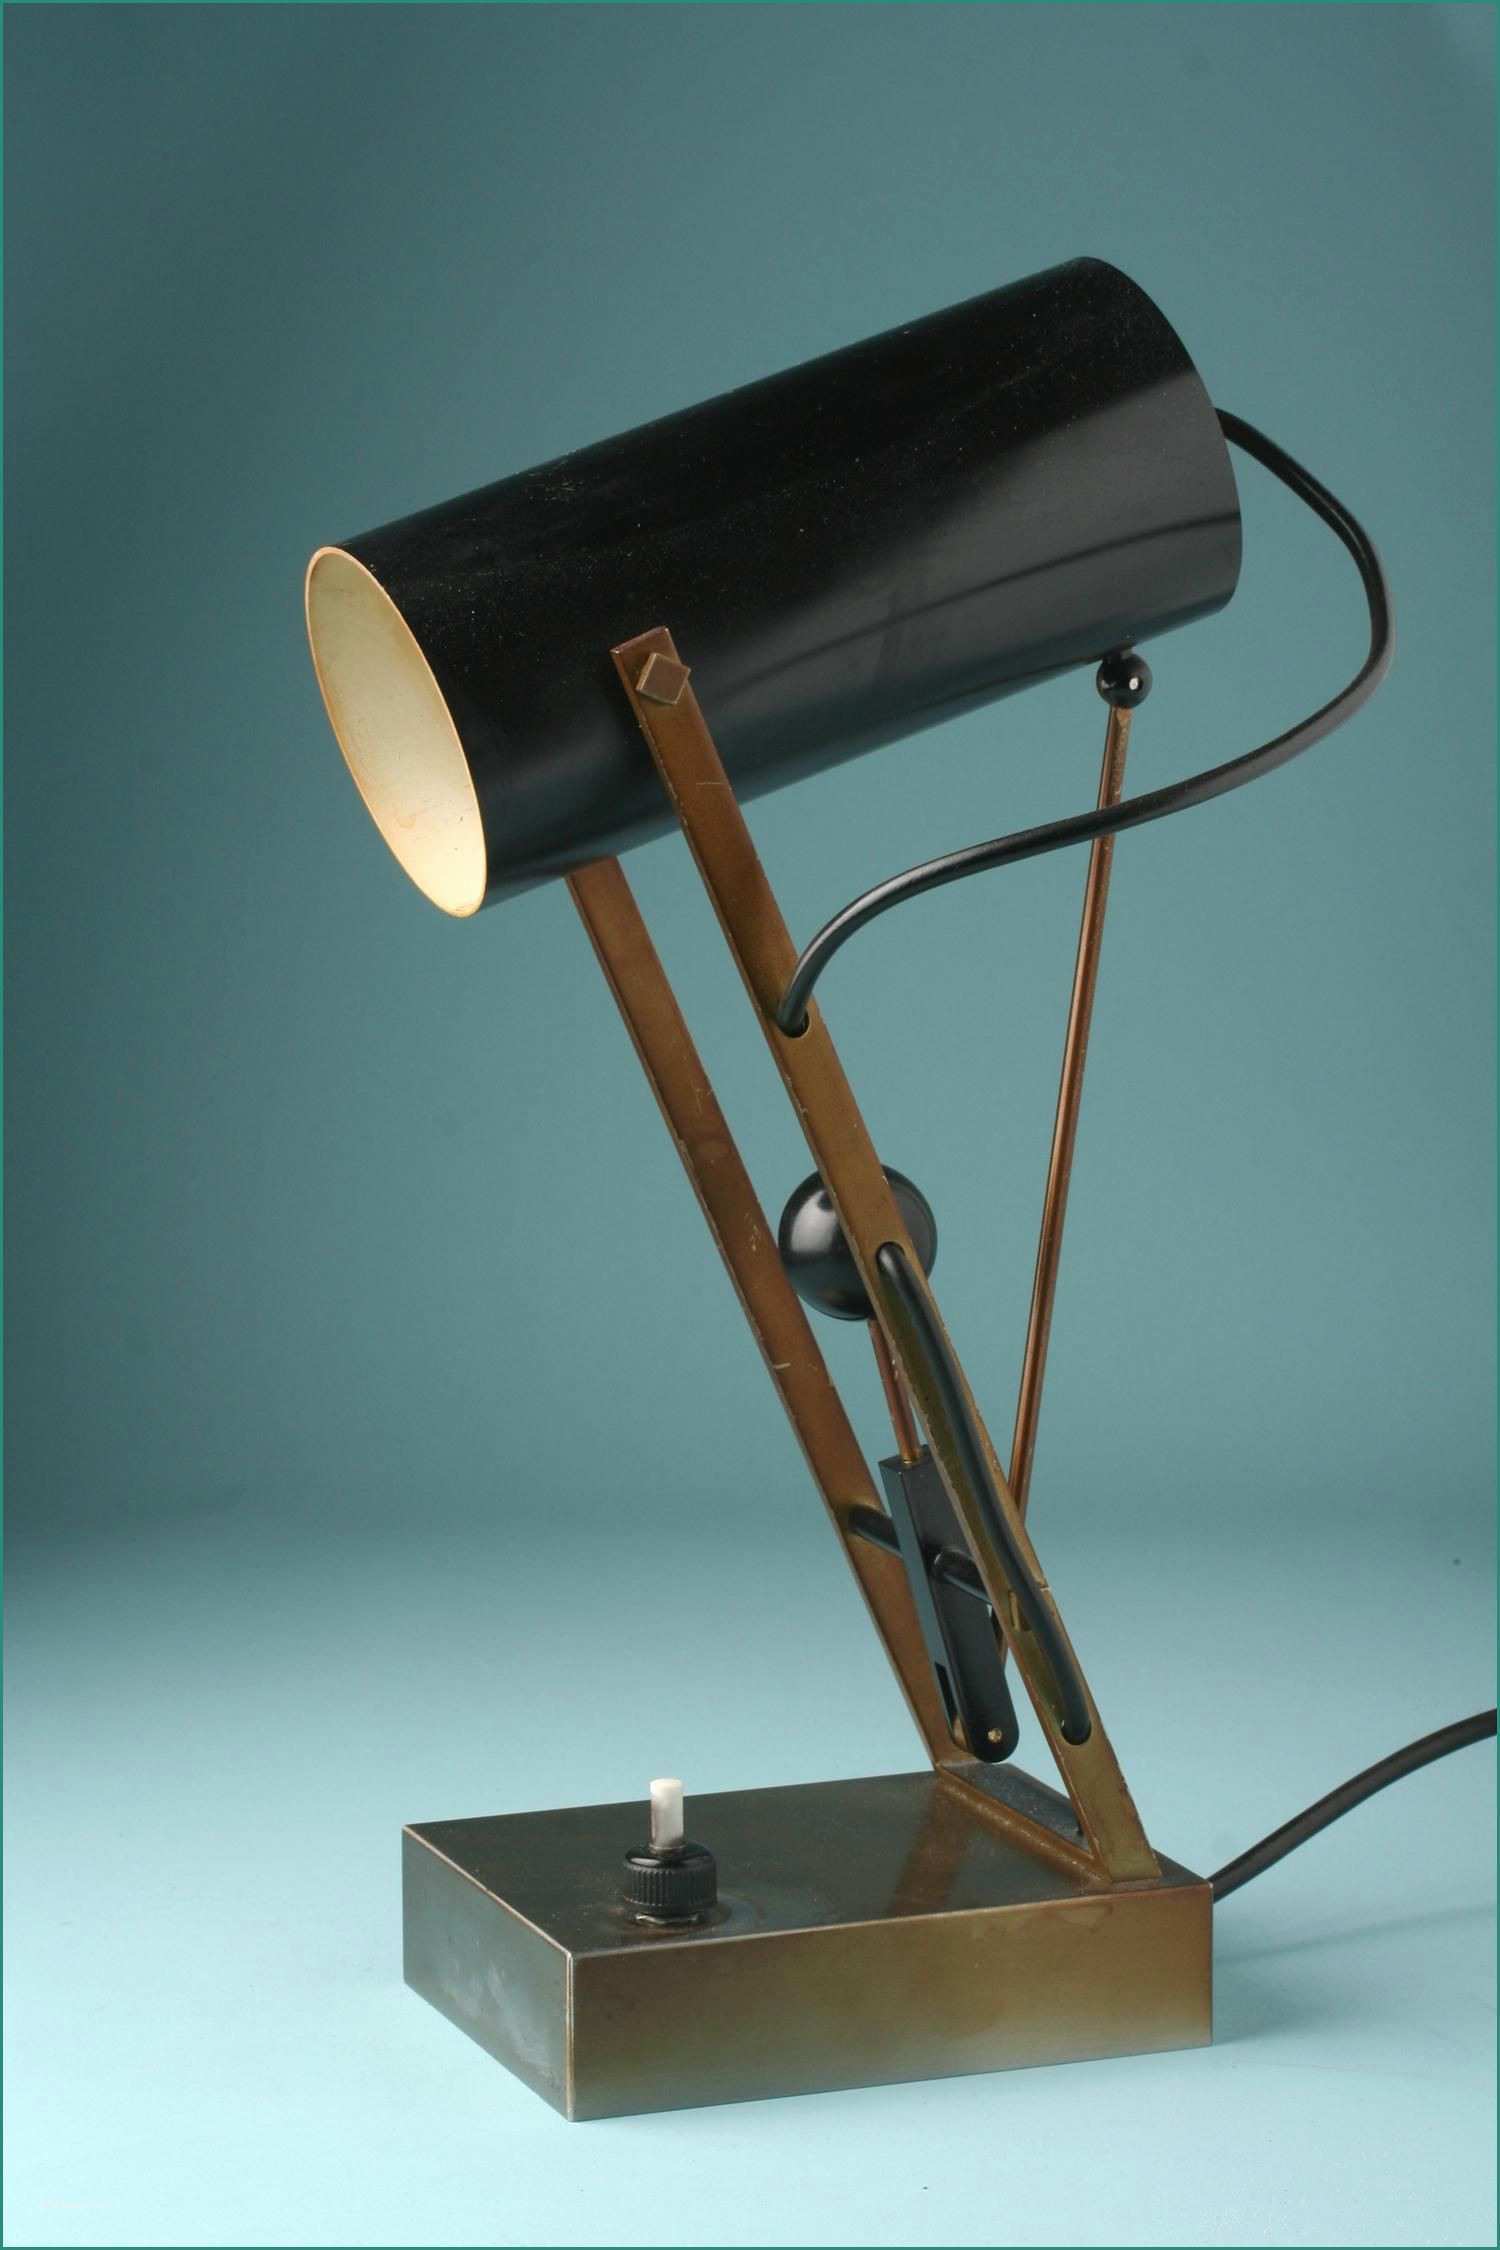 Lampade Da Ufficio E Lampade Design Low Cost Inspirational Lampada Da Tavolo Copycat